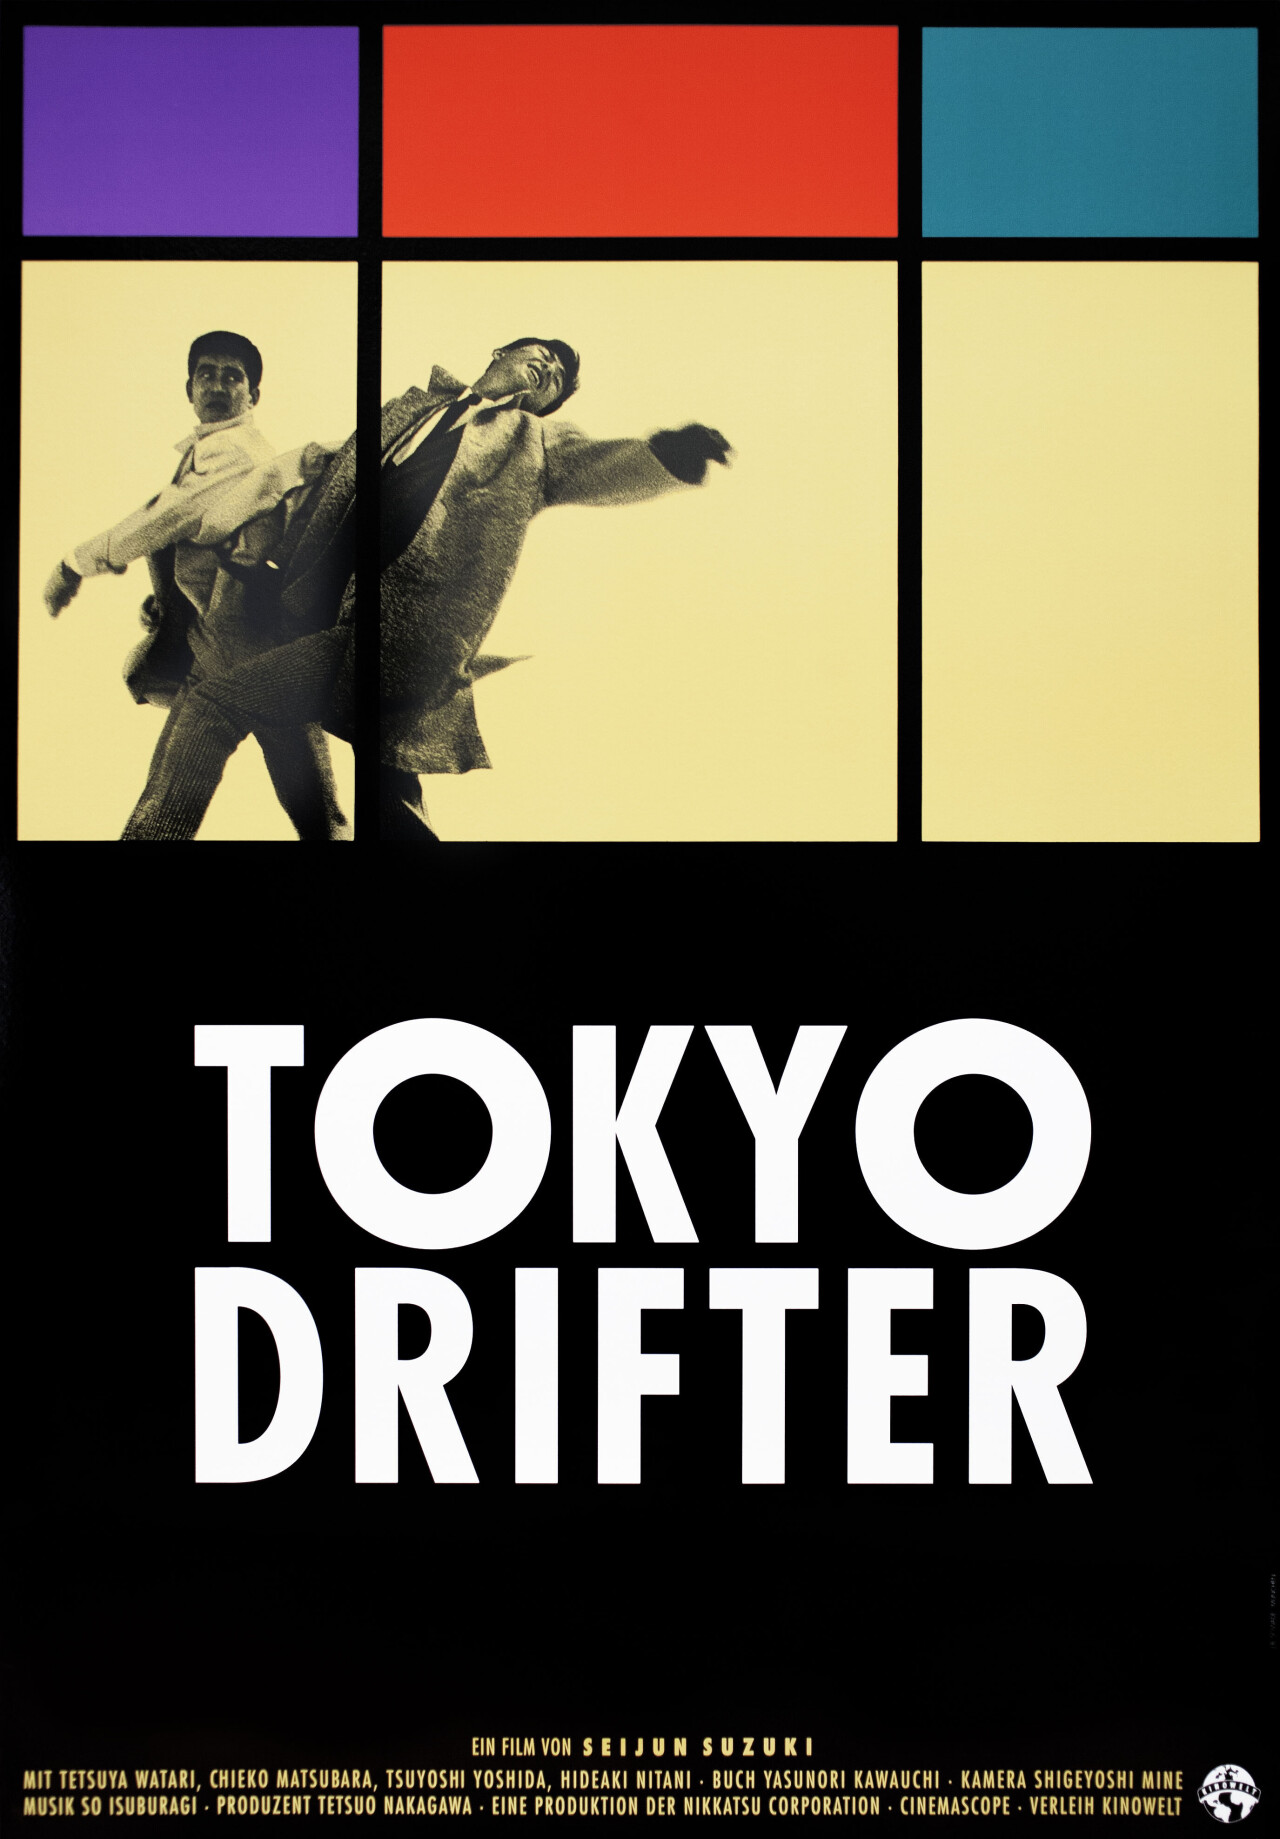 Токийский скиталец (Tokyo Drifter, 1966), режиссёр Сейджун Судзуки, немецкий (ФРГ) постер к фильму, автор Дж. Б. Совад (графический дизайн, 1988 год)